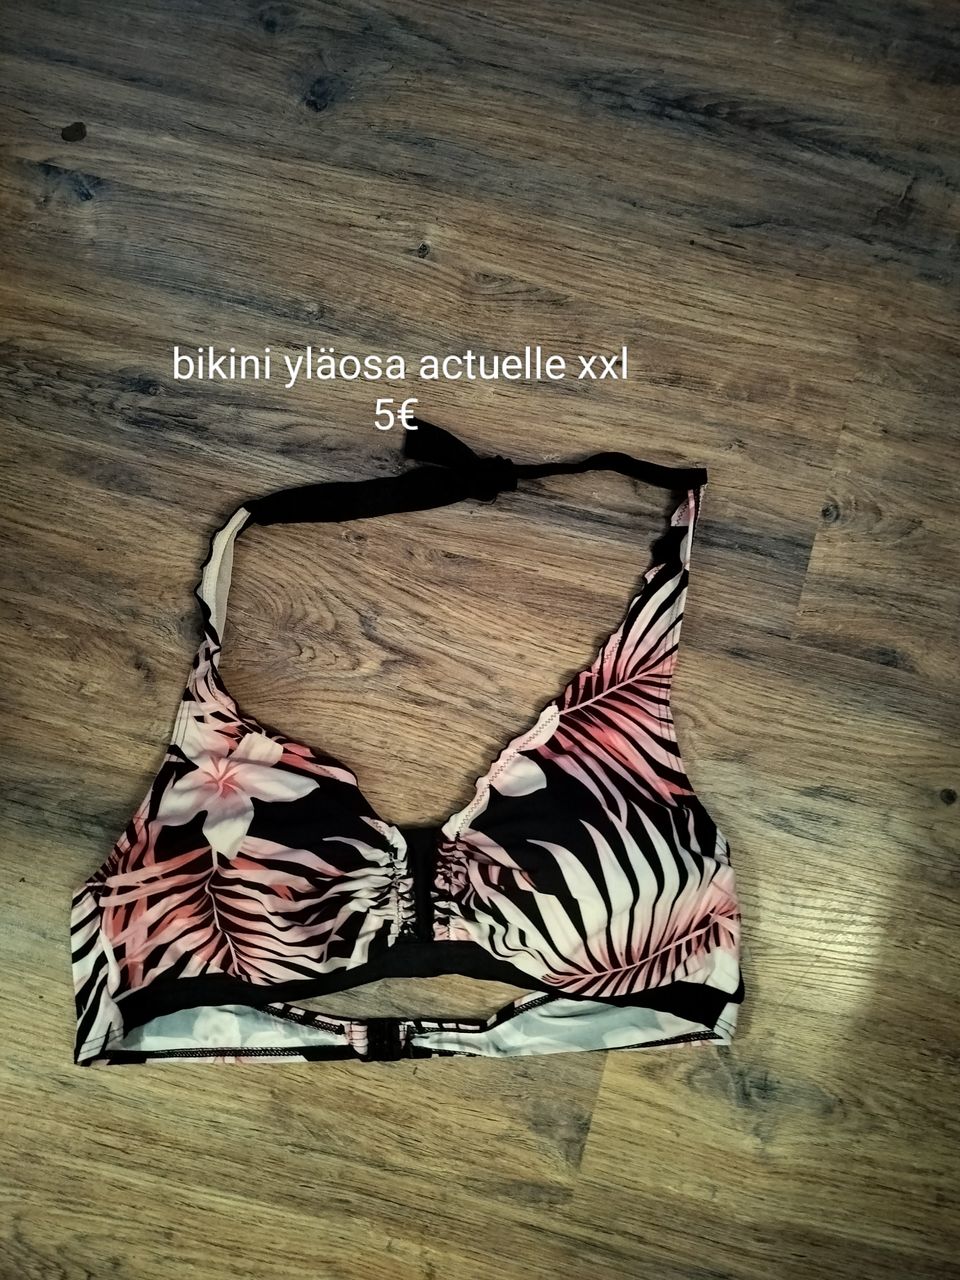 Bikini yläosa